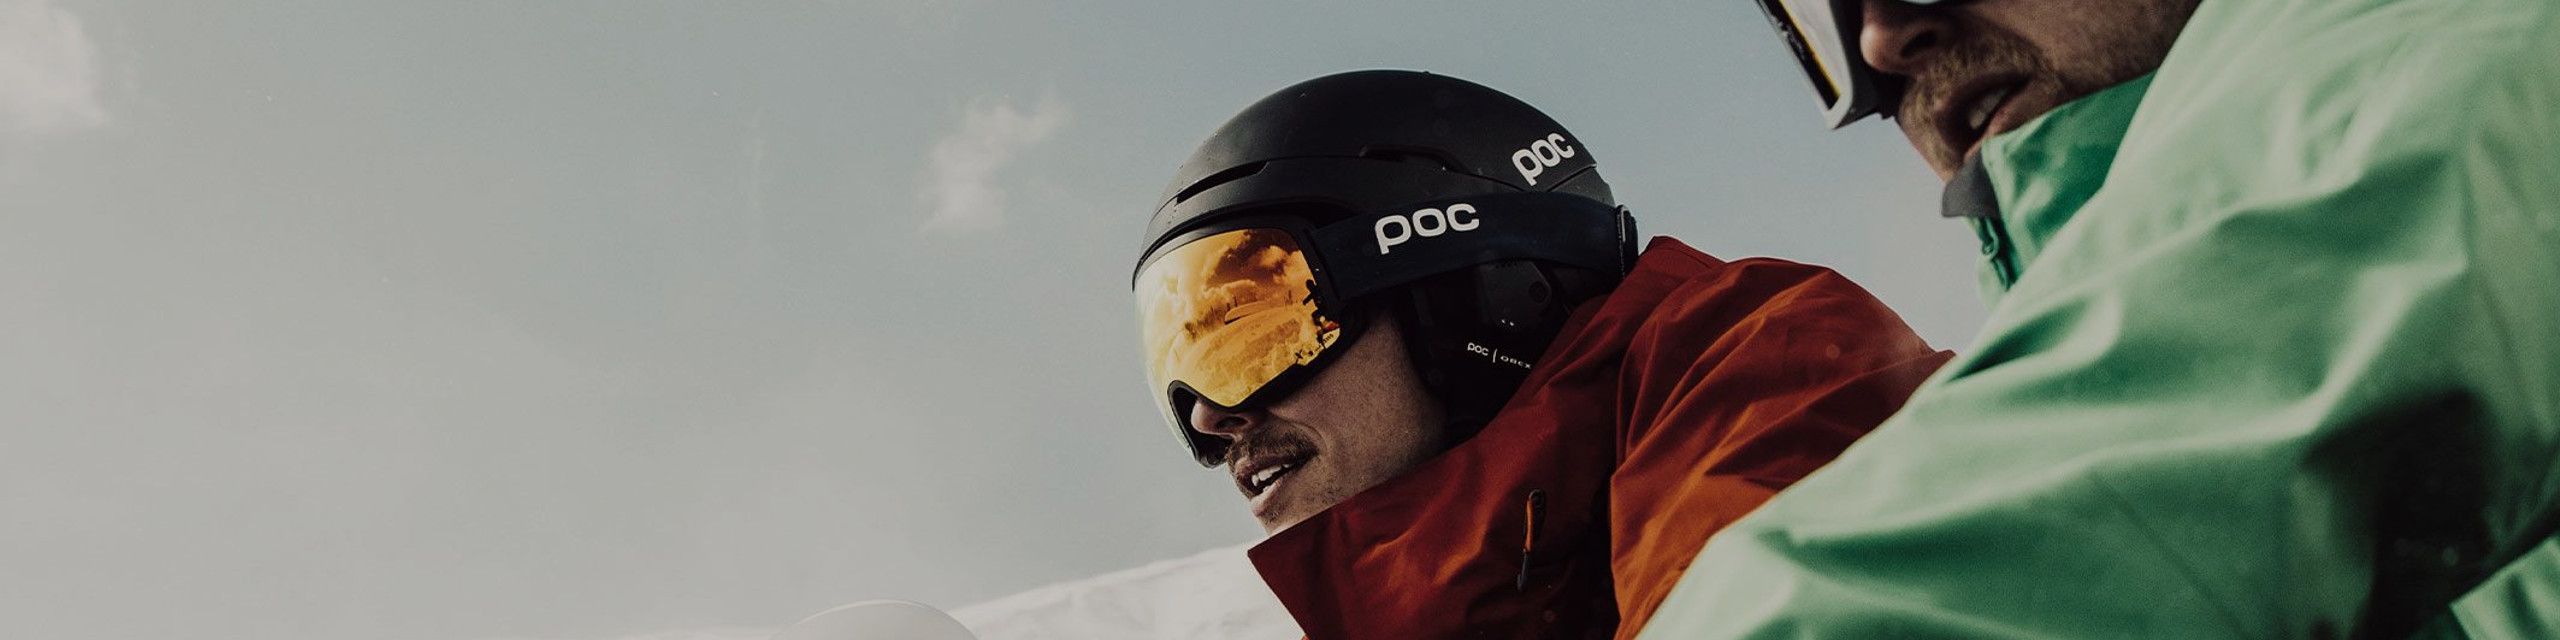 POC - Køb skihjelme og rygskjold med